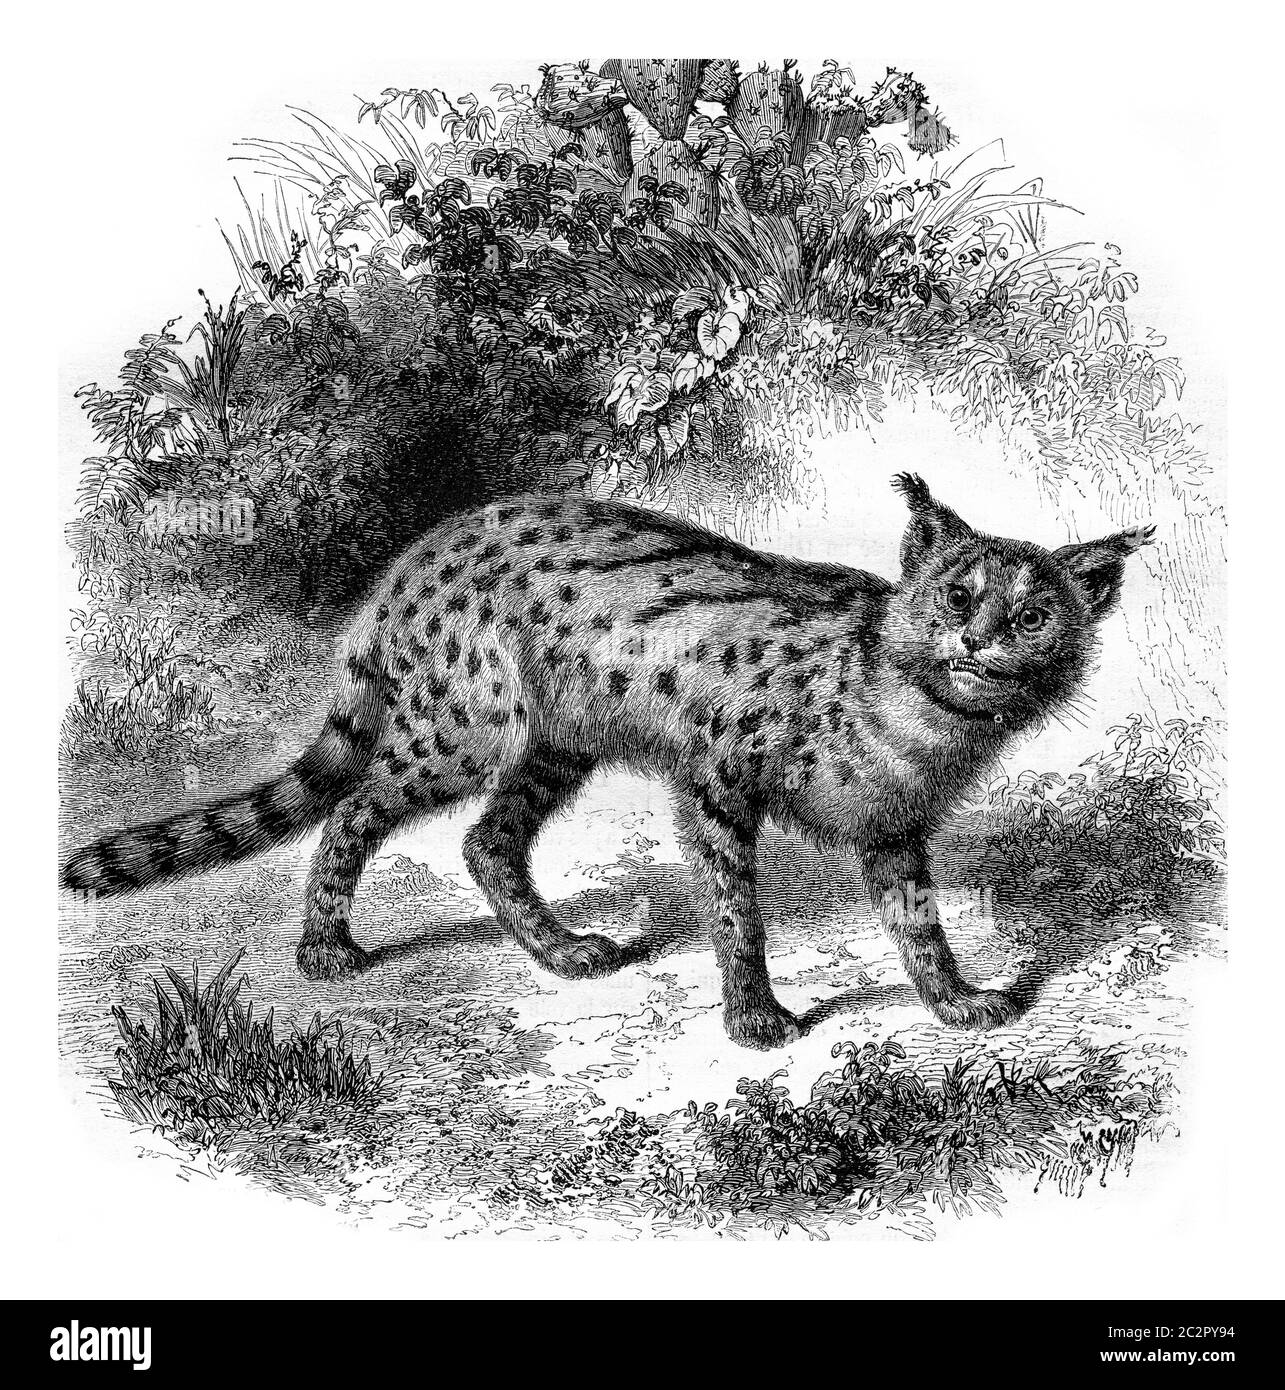 Zoo Marseille, die Servalkatze, Vintage gravierte Illustration. Magasin Pittoresque 1857. Stockfoto